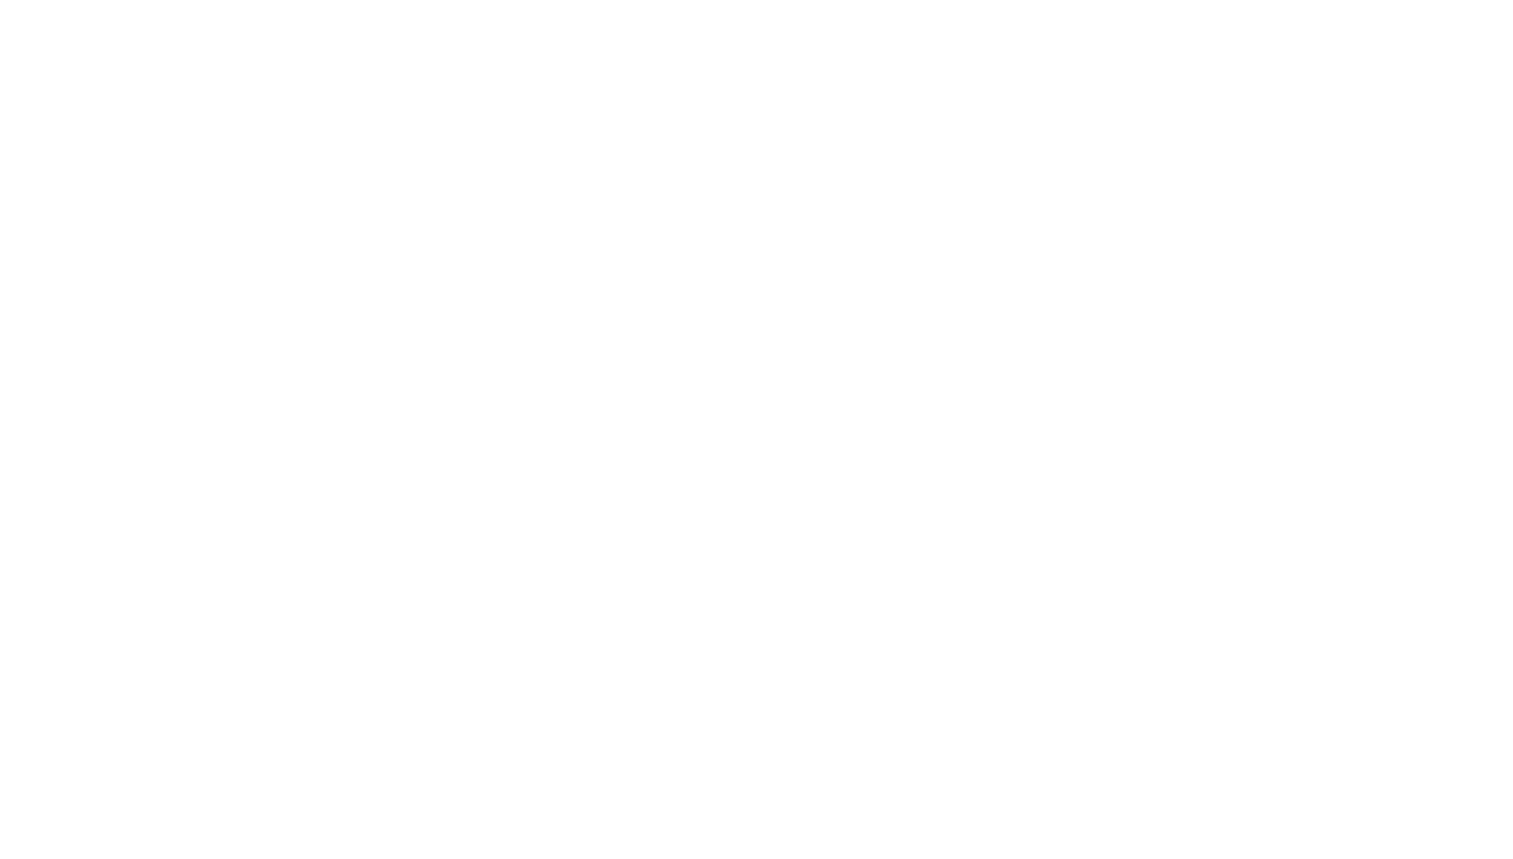 CACI logo large for dark backgrounds (transparent PNG)